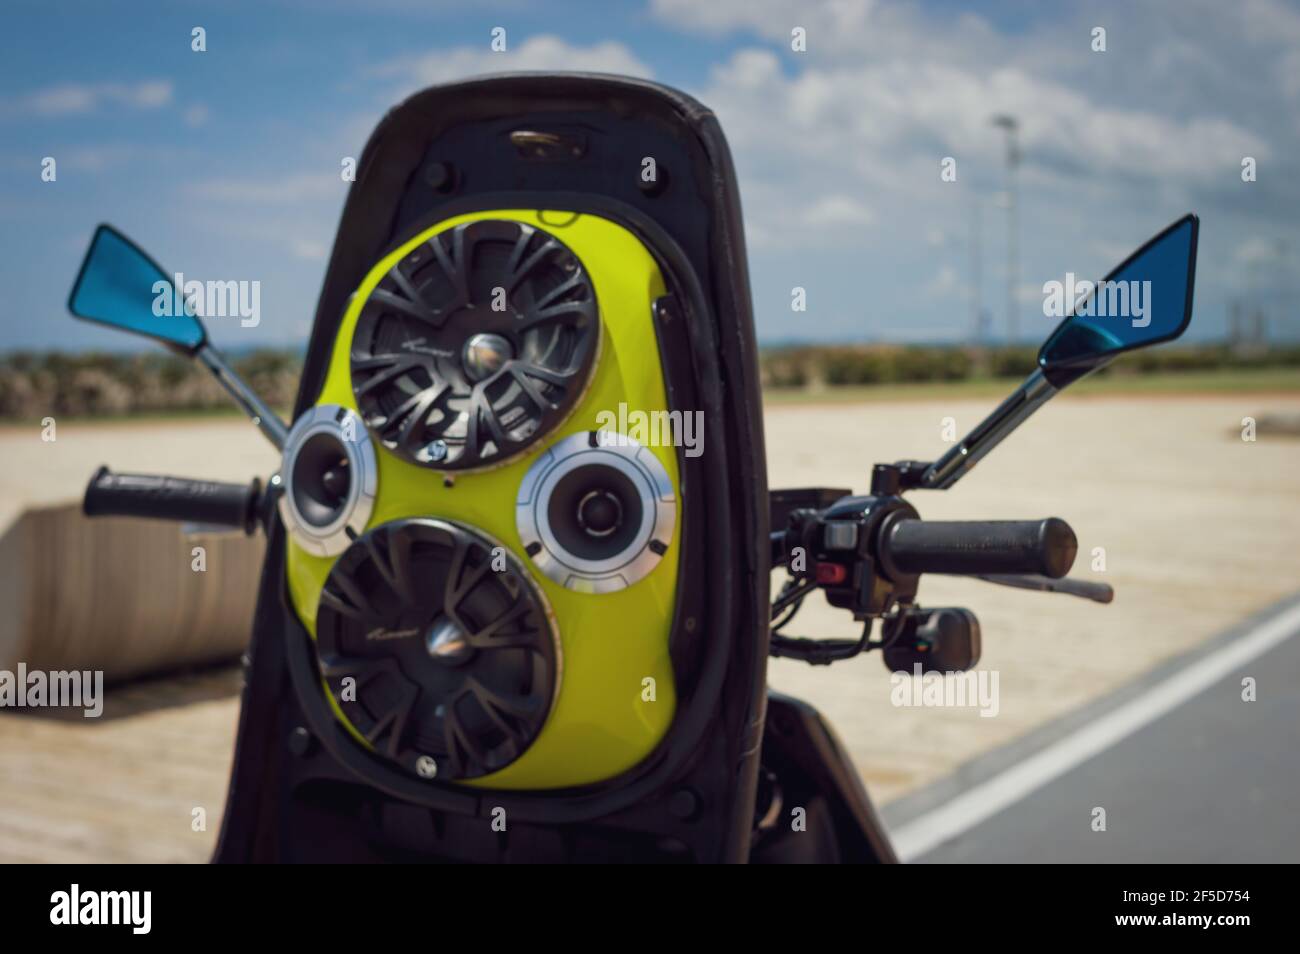 Motorrad mit Soundsystem im Freien Stockfotografie - Alamy